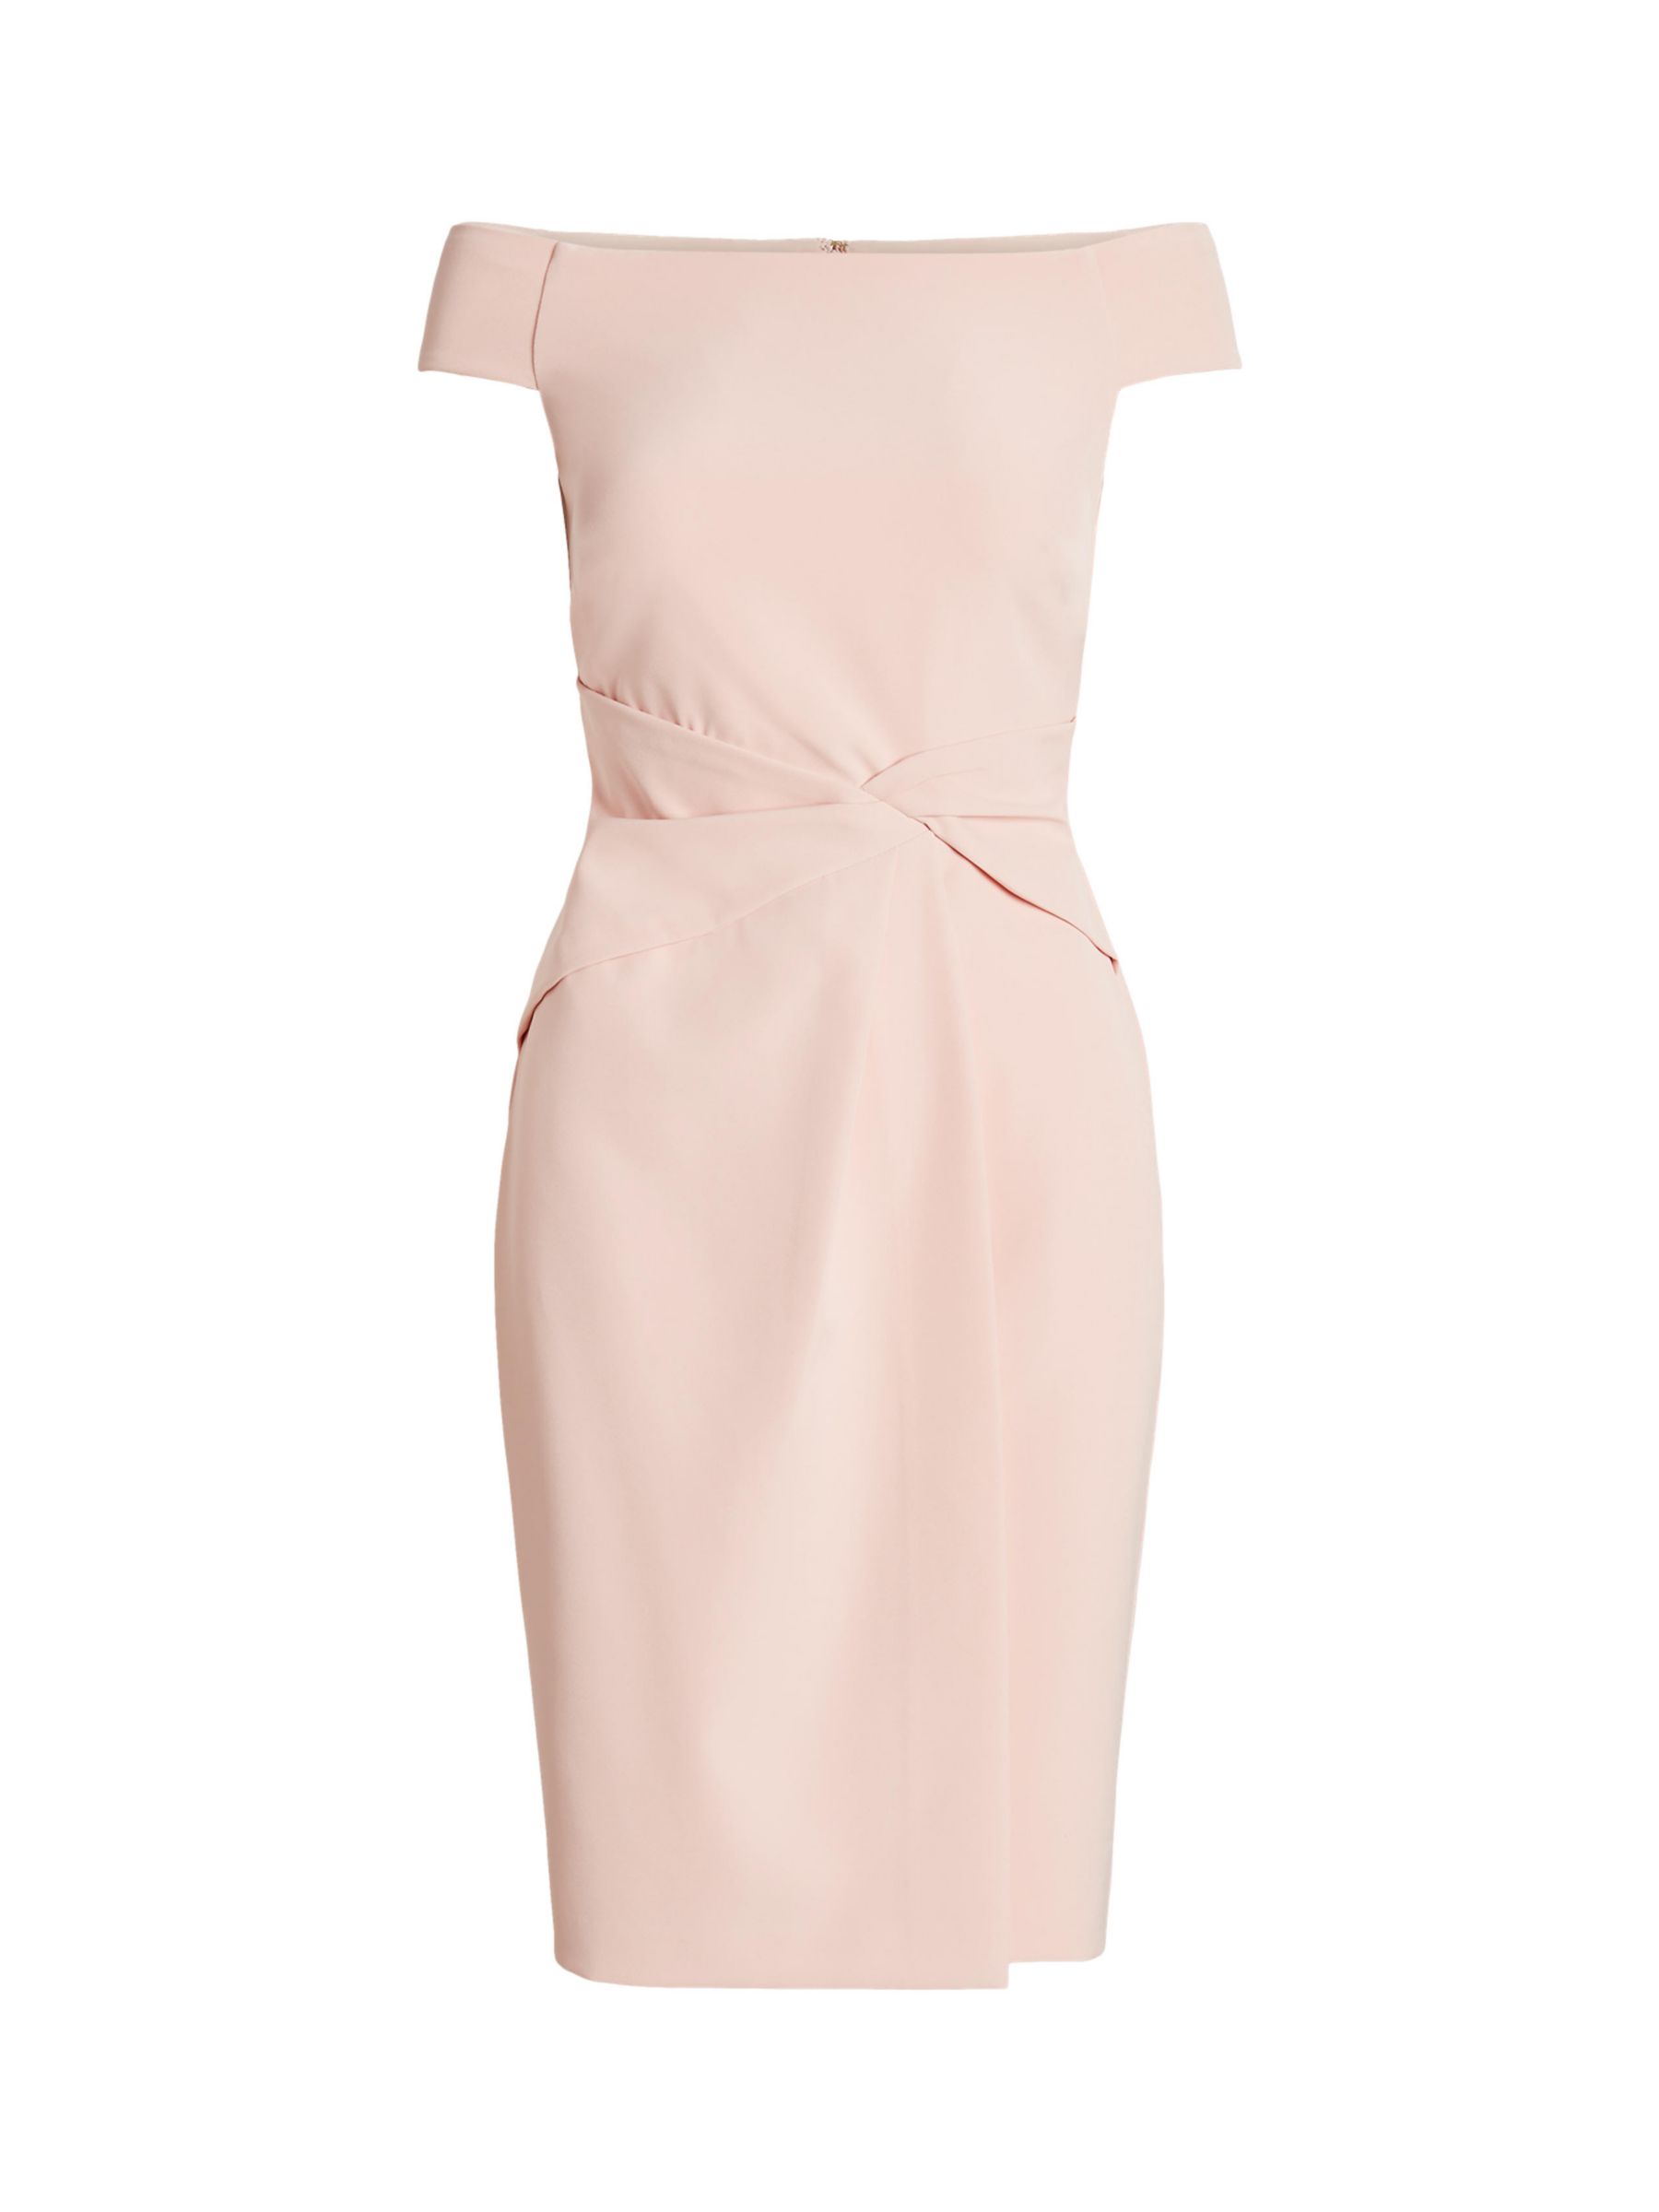 Ralph Lauren Leonidas Gown Mini Dress, Pale Pink at John Lewis & Partners